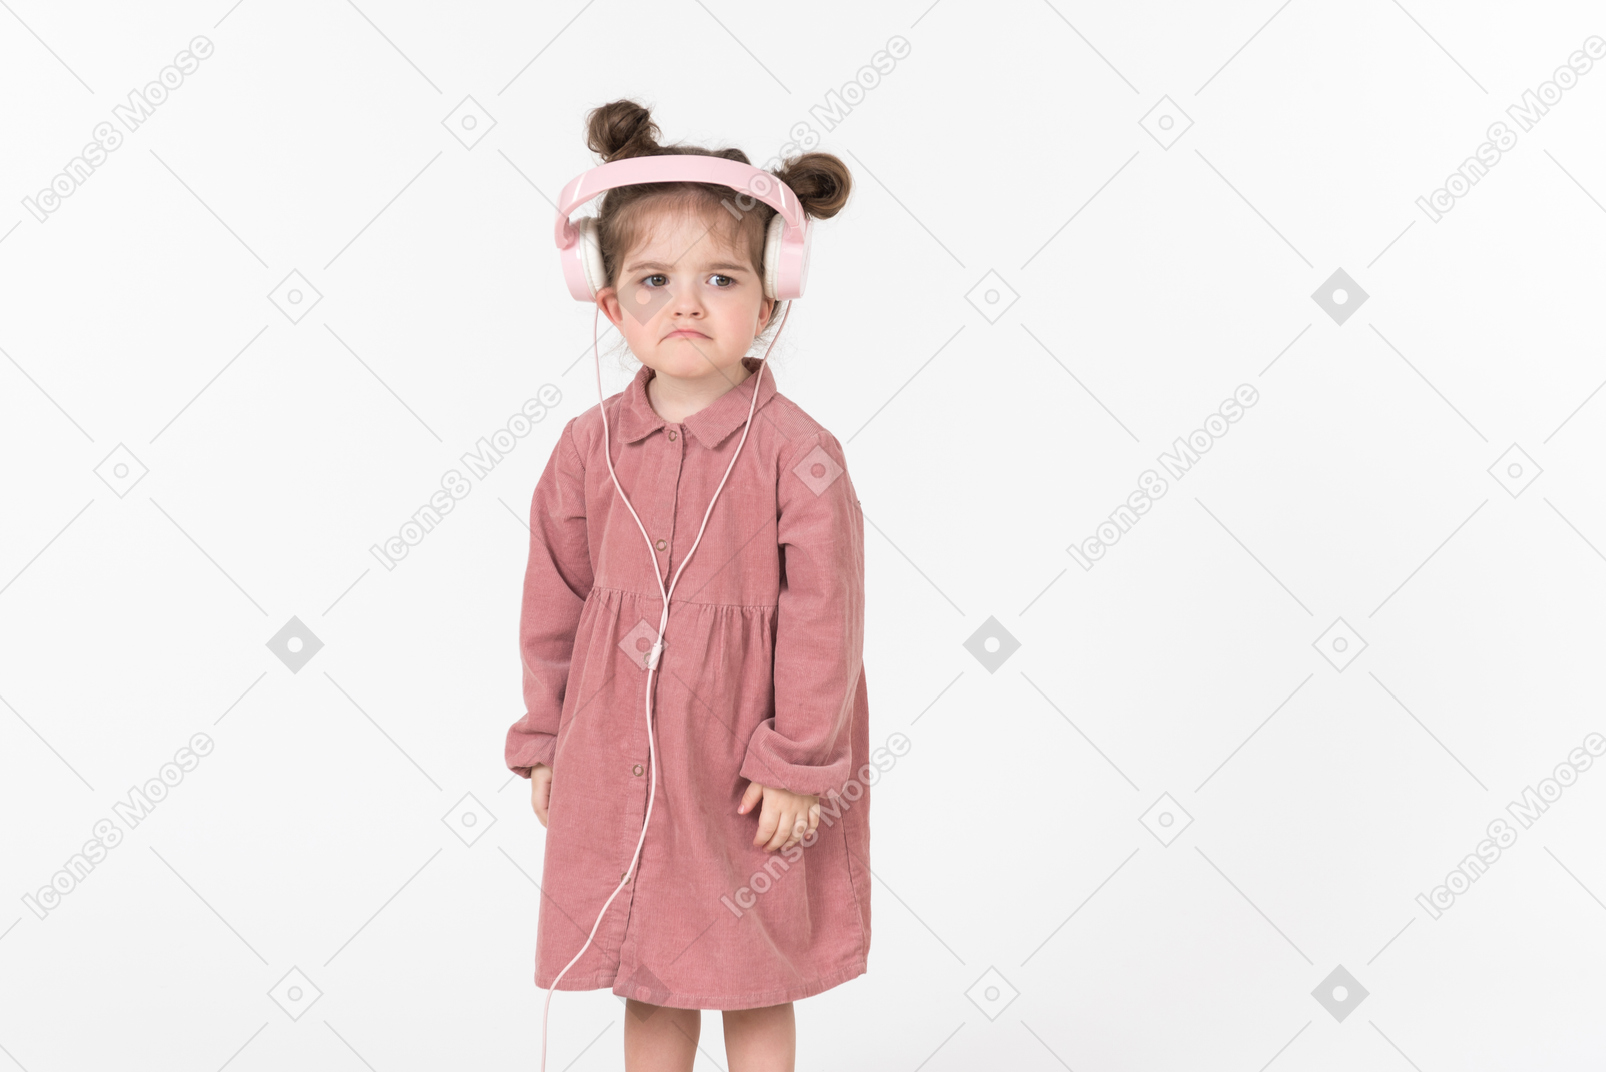 Kid girl in pink dress wearing pink headphones